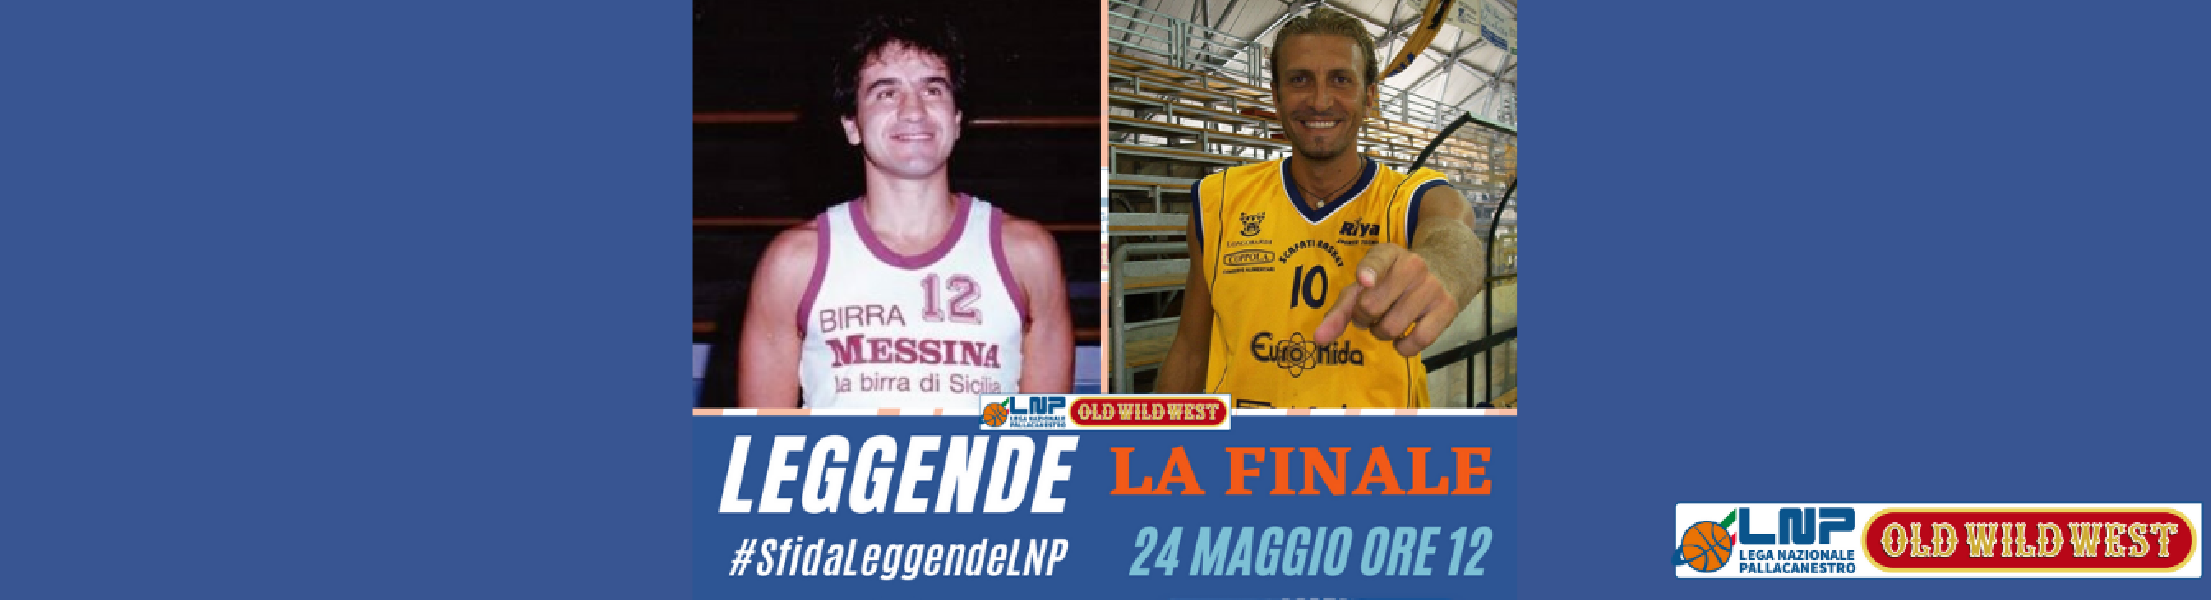 https://www.basketmarche.it/immagini_articoli/23-05-2020/francesco-mannella-pino-corvo-sono-finalisti-contest-leggende-votare-domenica-maggio-600.png